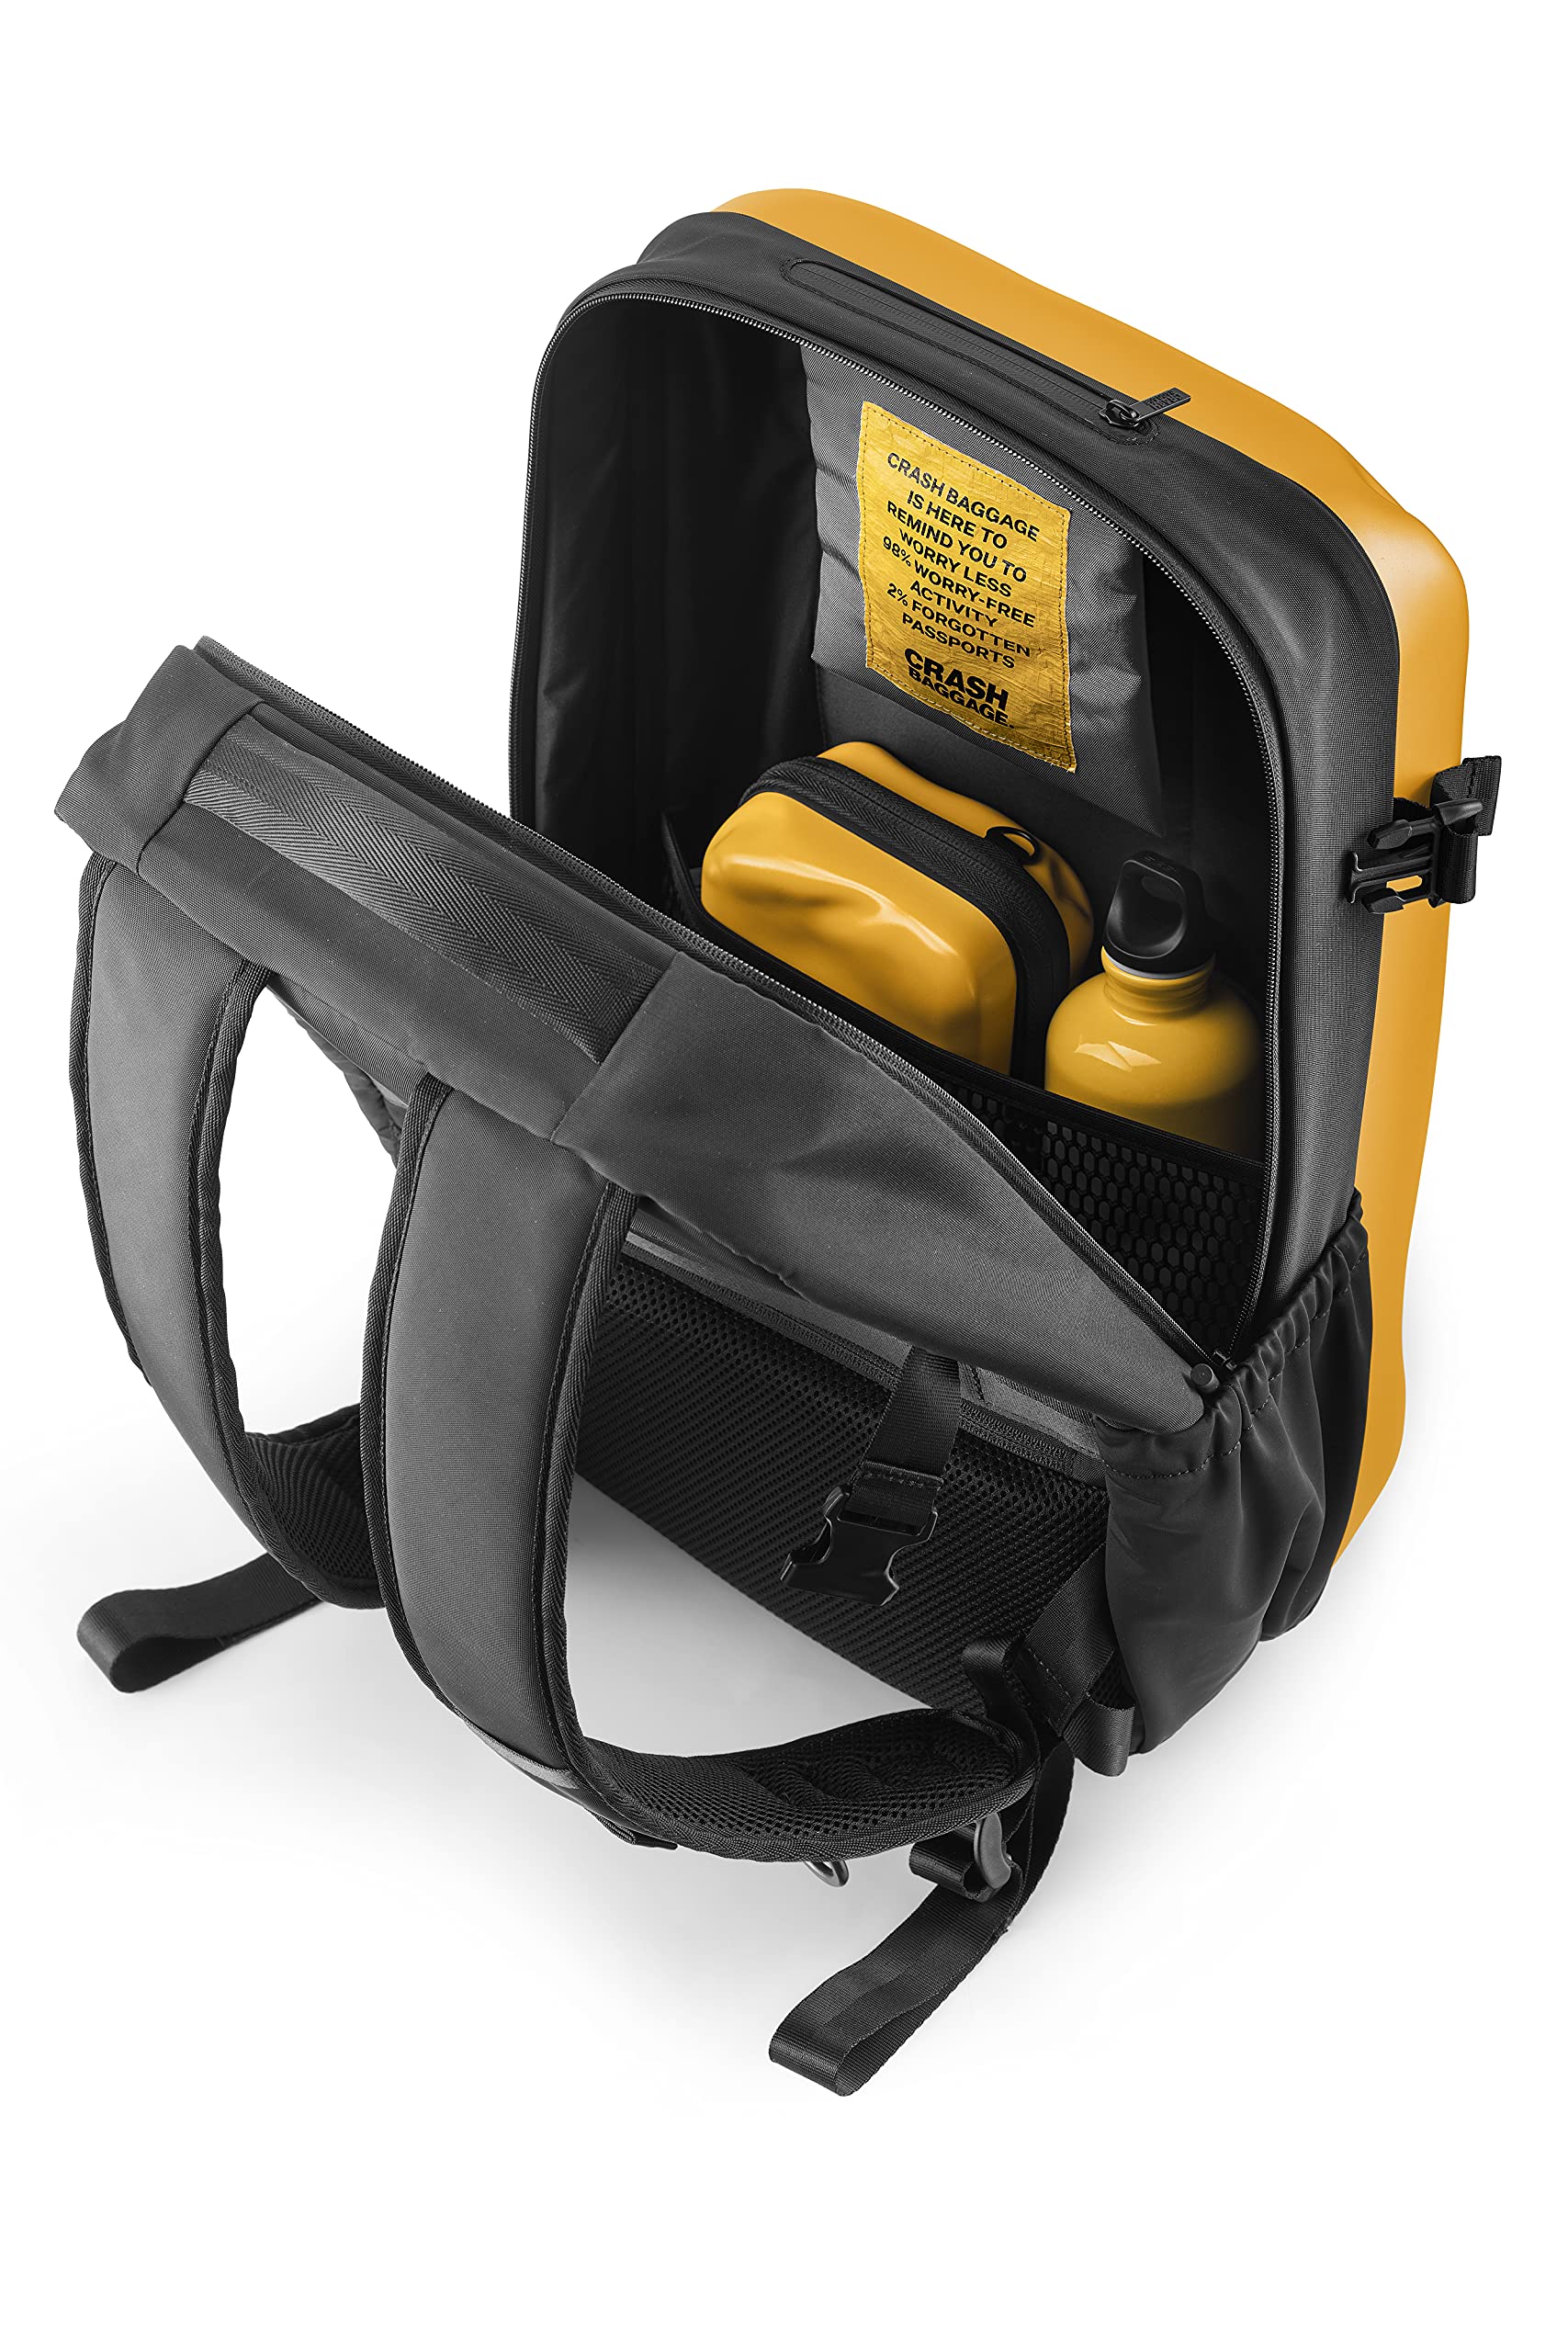 CRASH BAGGAGE Iconic Backpack 46 x 32 x 20 cm | Yellow